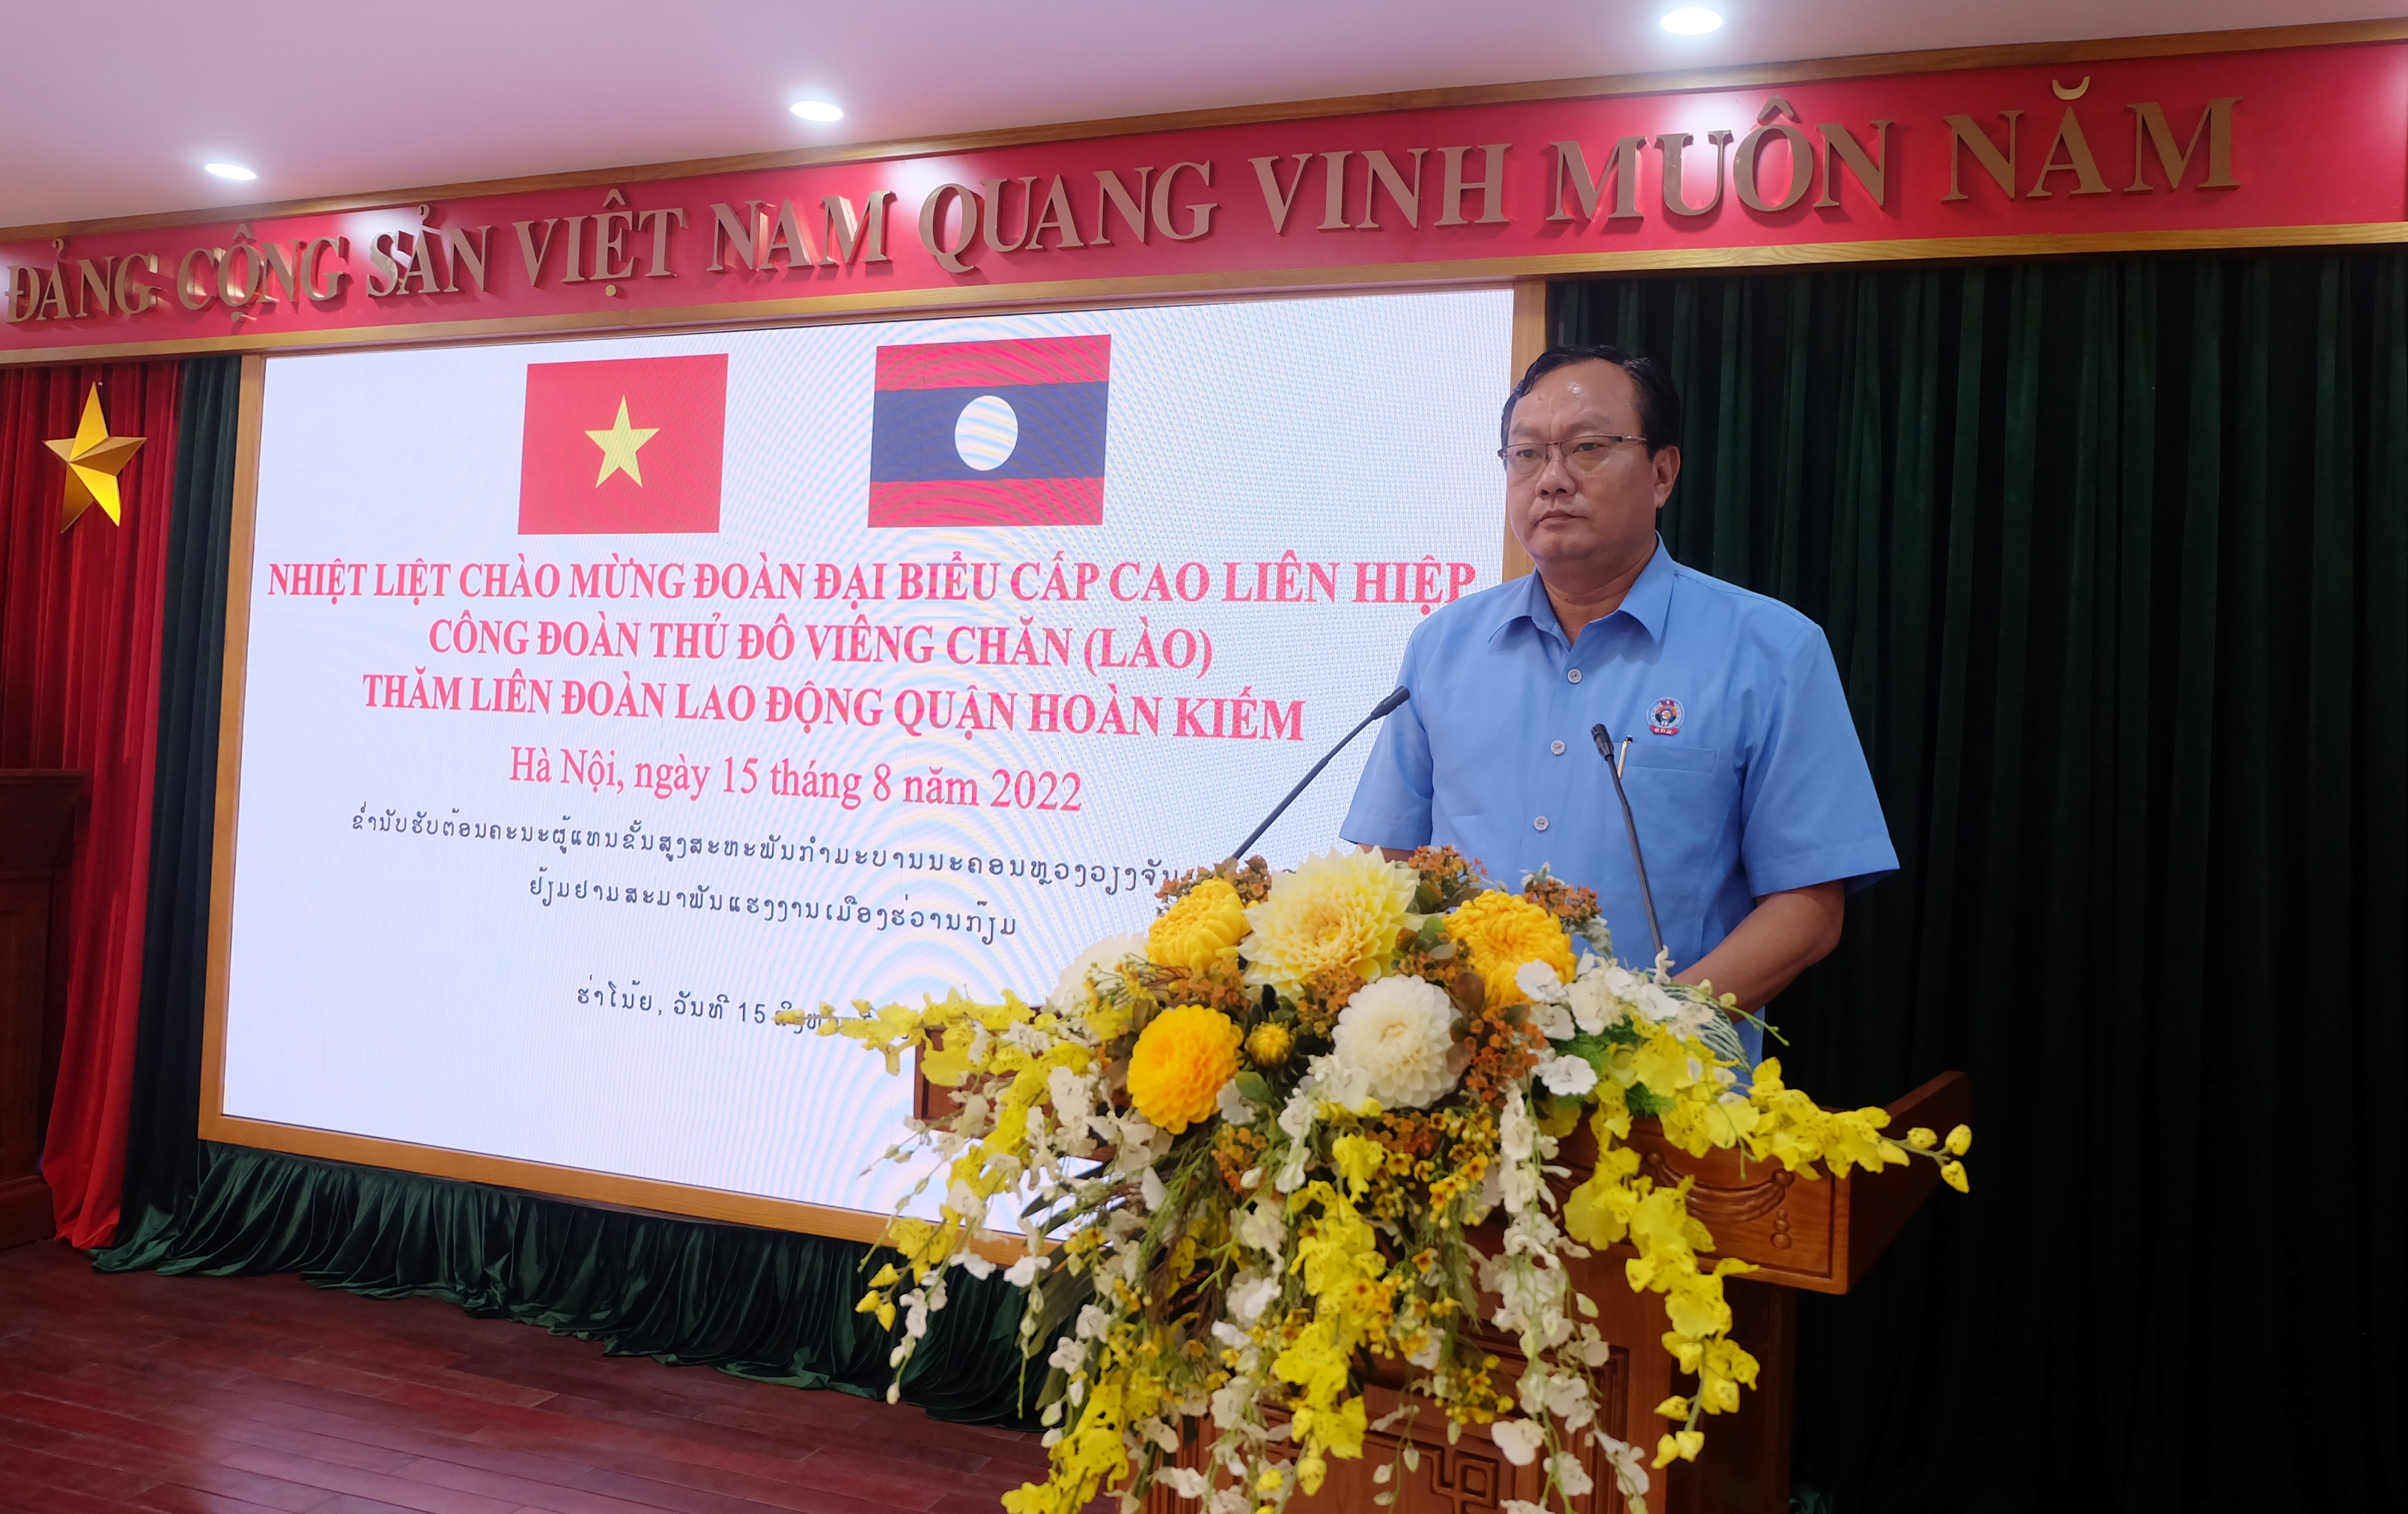 Đoàn đại biểu cấp cao LHCĐ thành phố Viêng Chăn thăm, làm việc với LĐLĐ quận Hoàn Kiếm